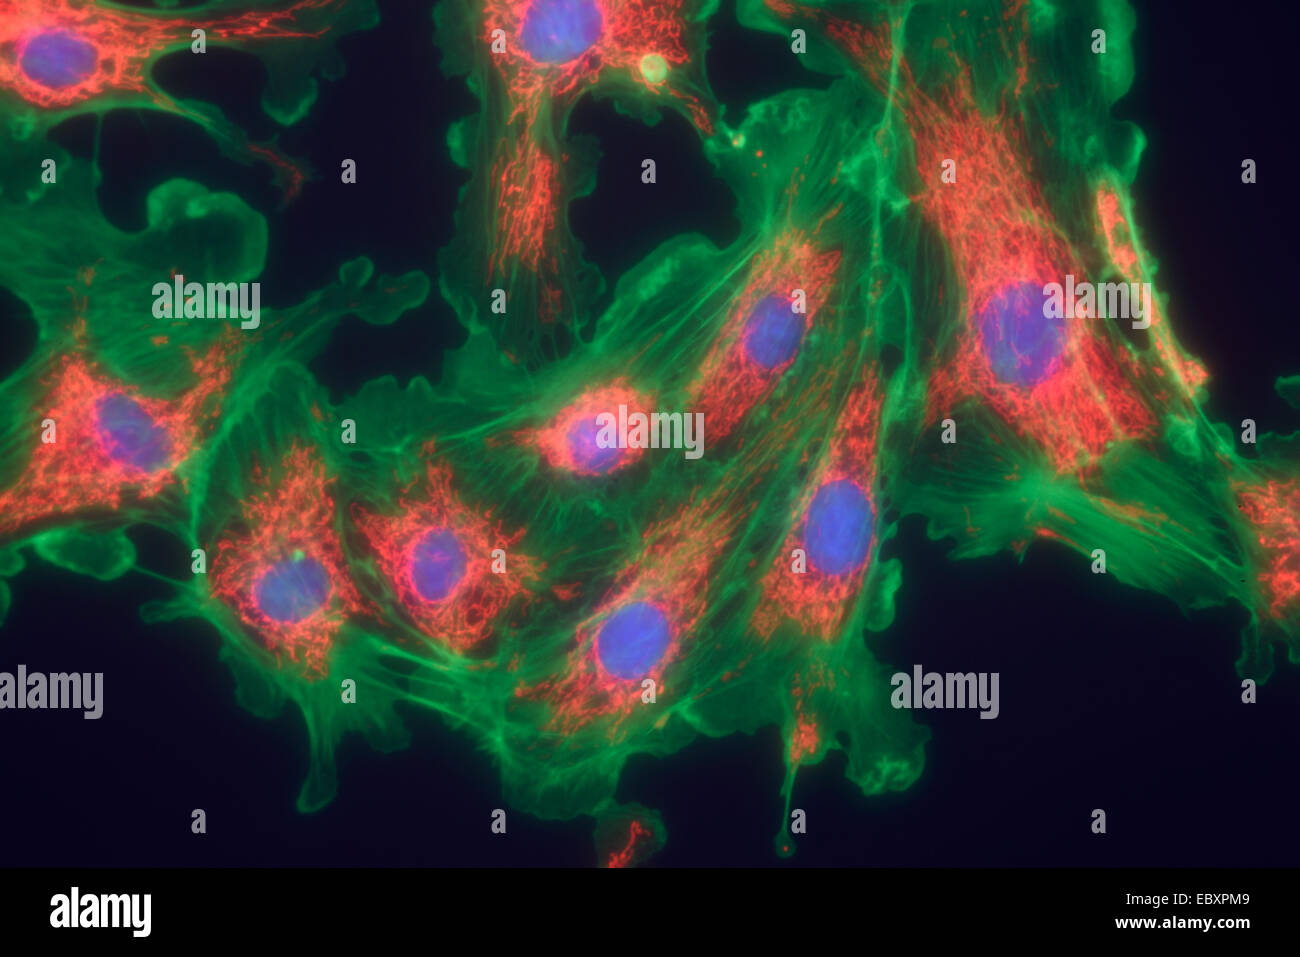 Microfilamenti, mitocondri e nuclei in cellule di fibroblasti Foto Stock